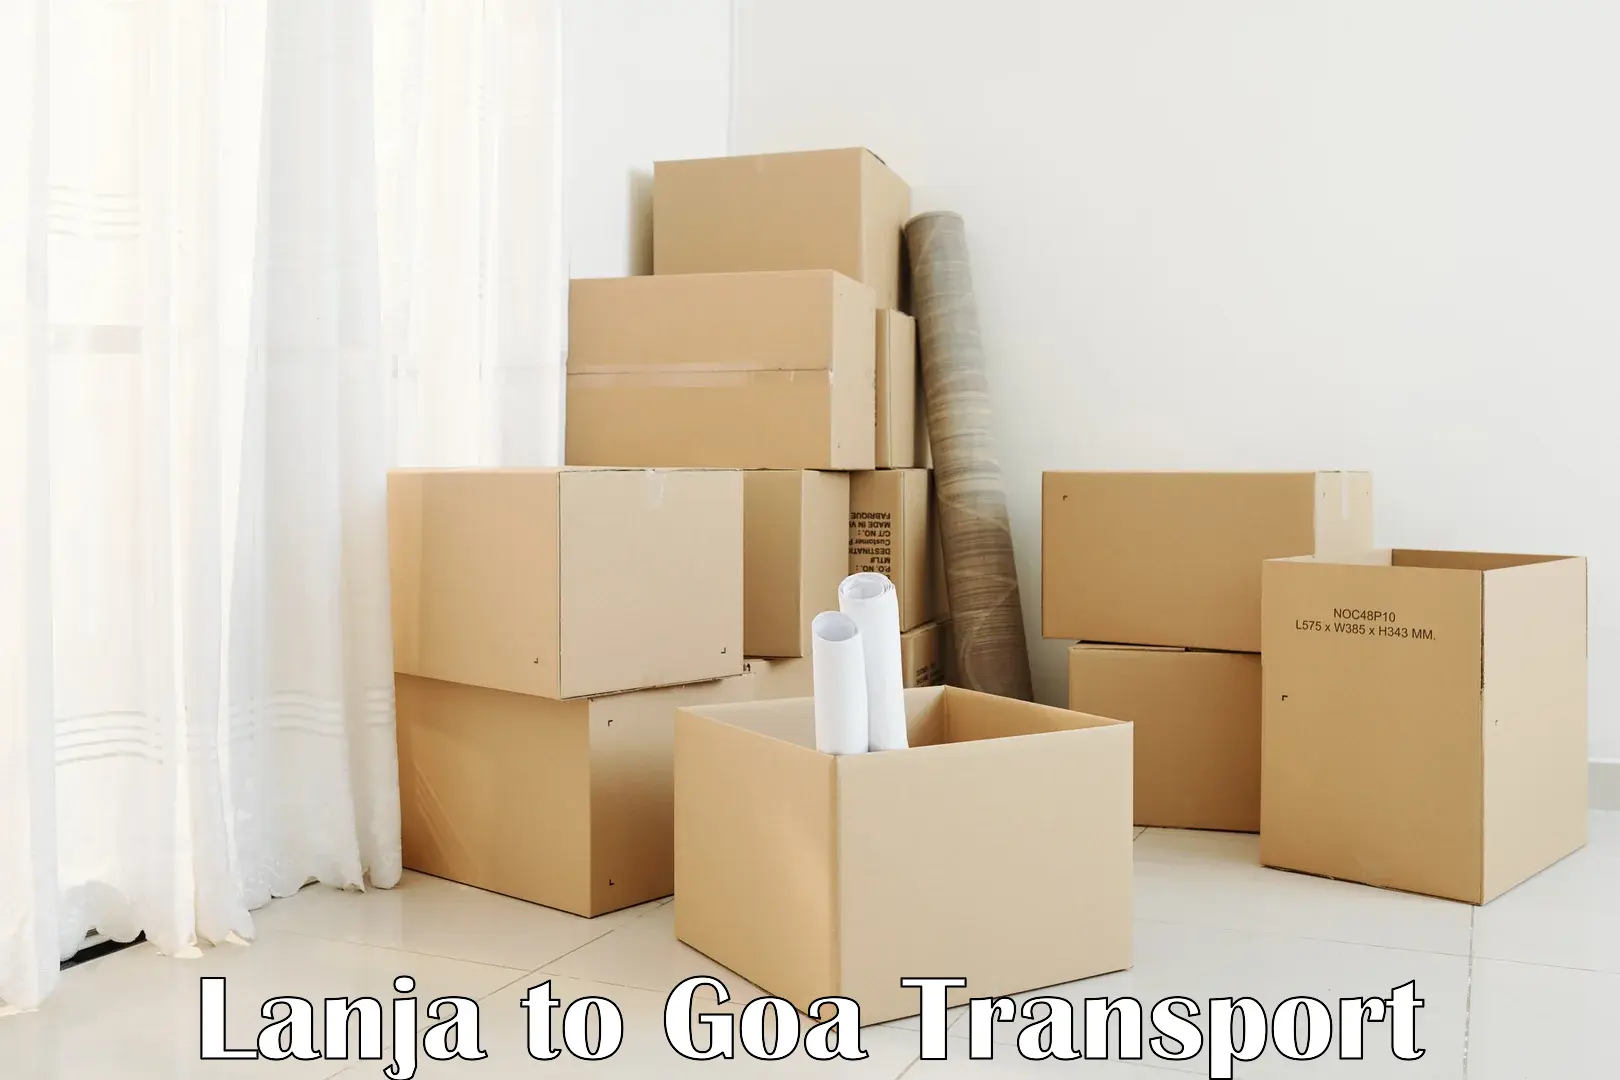 Bike transport service Lanja to IIT Goa